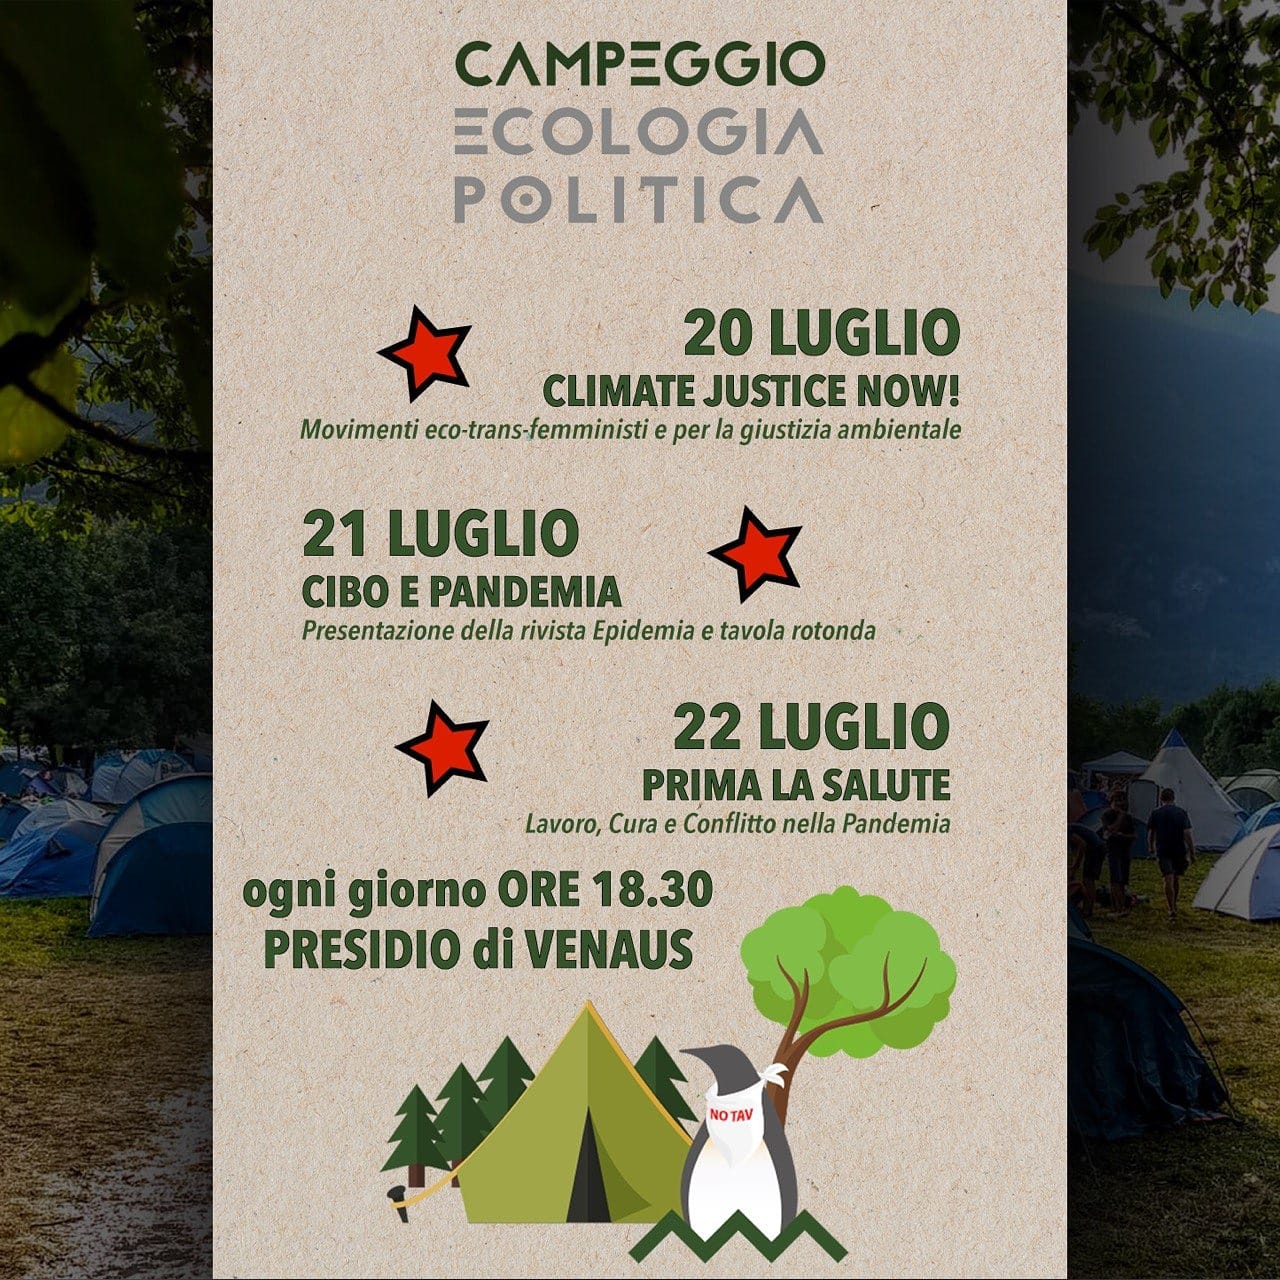 Venaus 20-21-22/07, Campeggio Ecologia Politica.